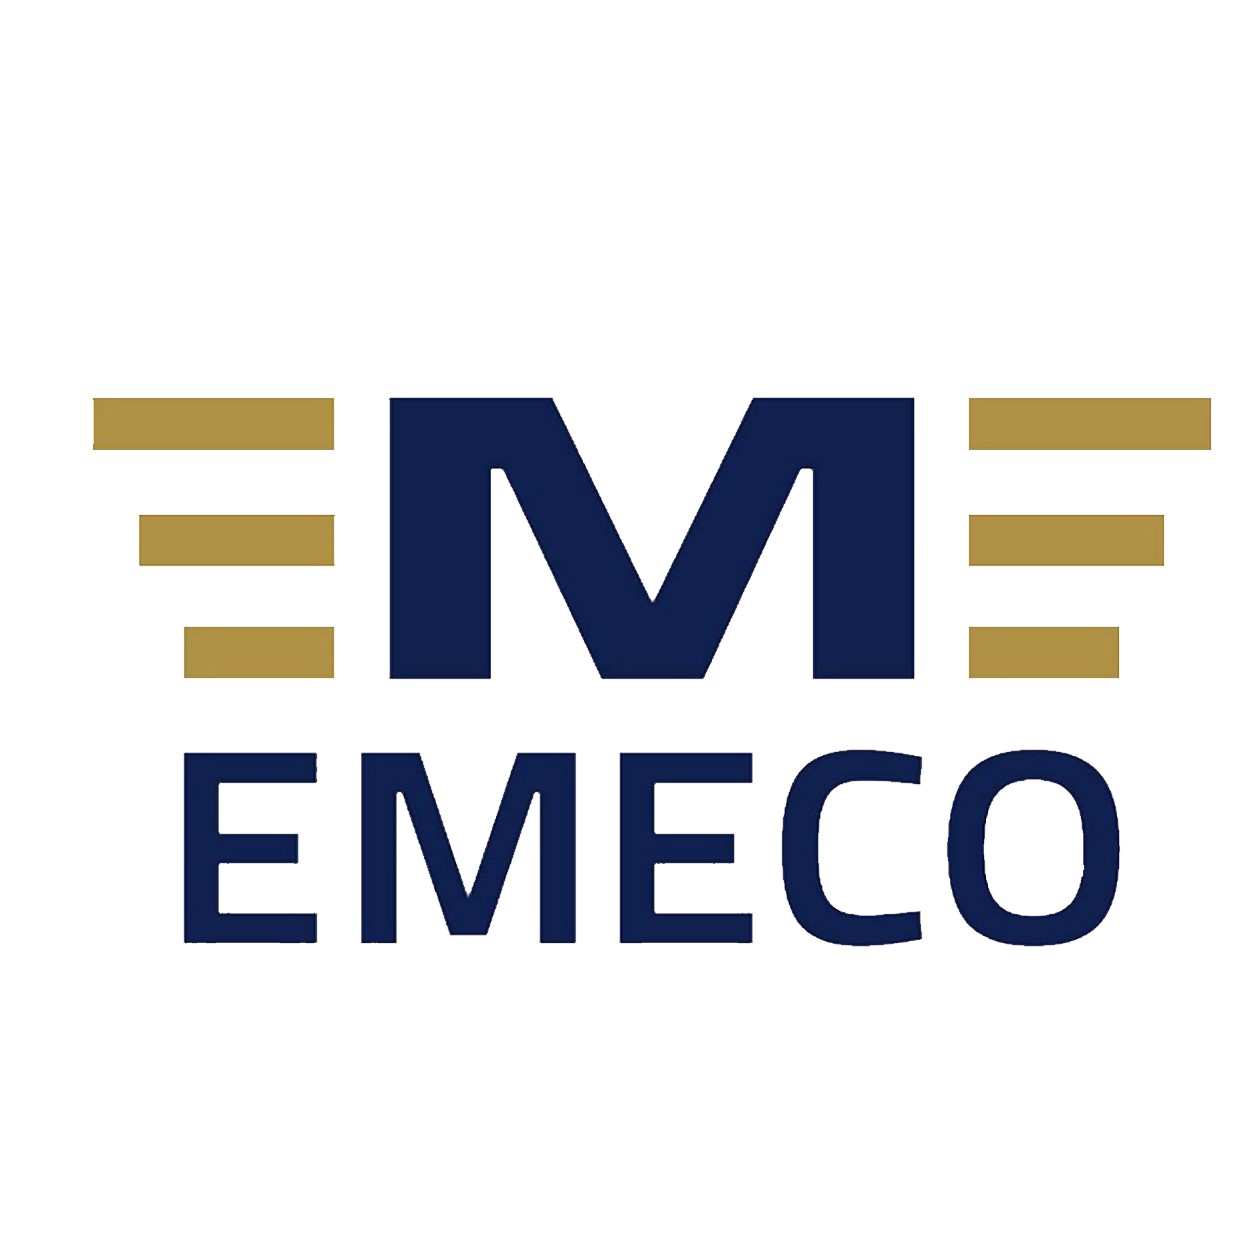 Emeco electromechanical engineering company